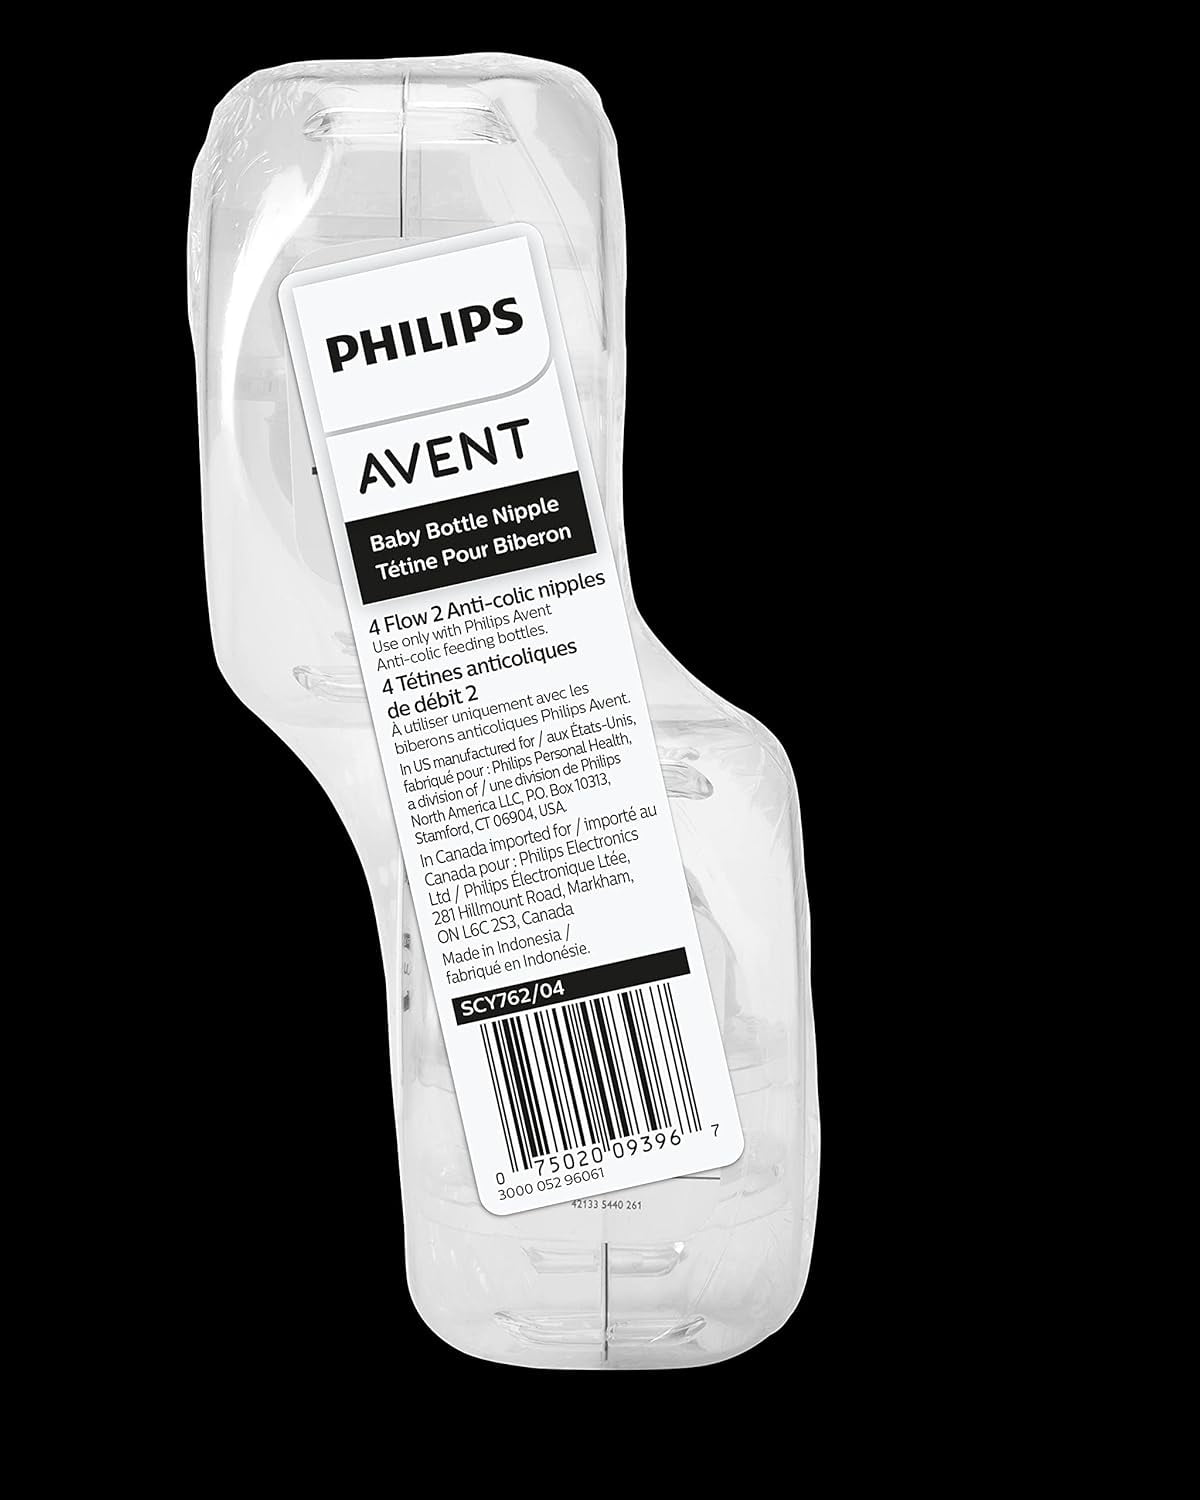 Philips Avent Natural 2 tétine pour biberon